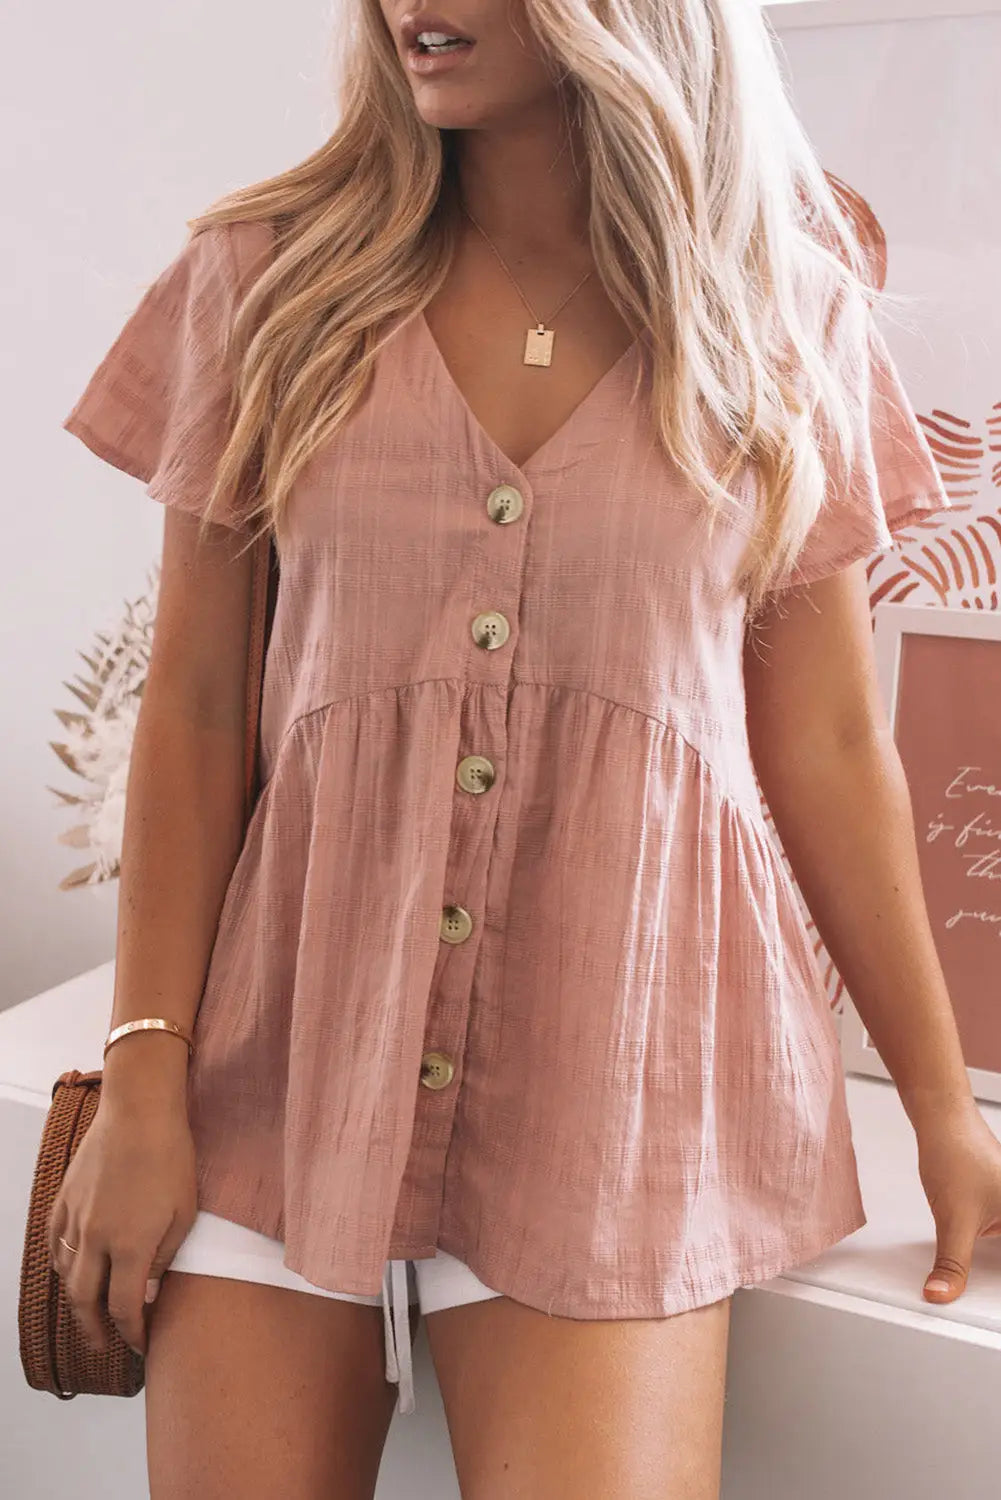 Pink short sleeves buttoned peplum shirt - s / 100% cotton - tops